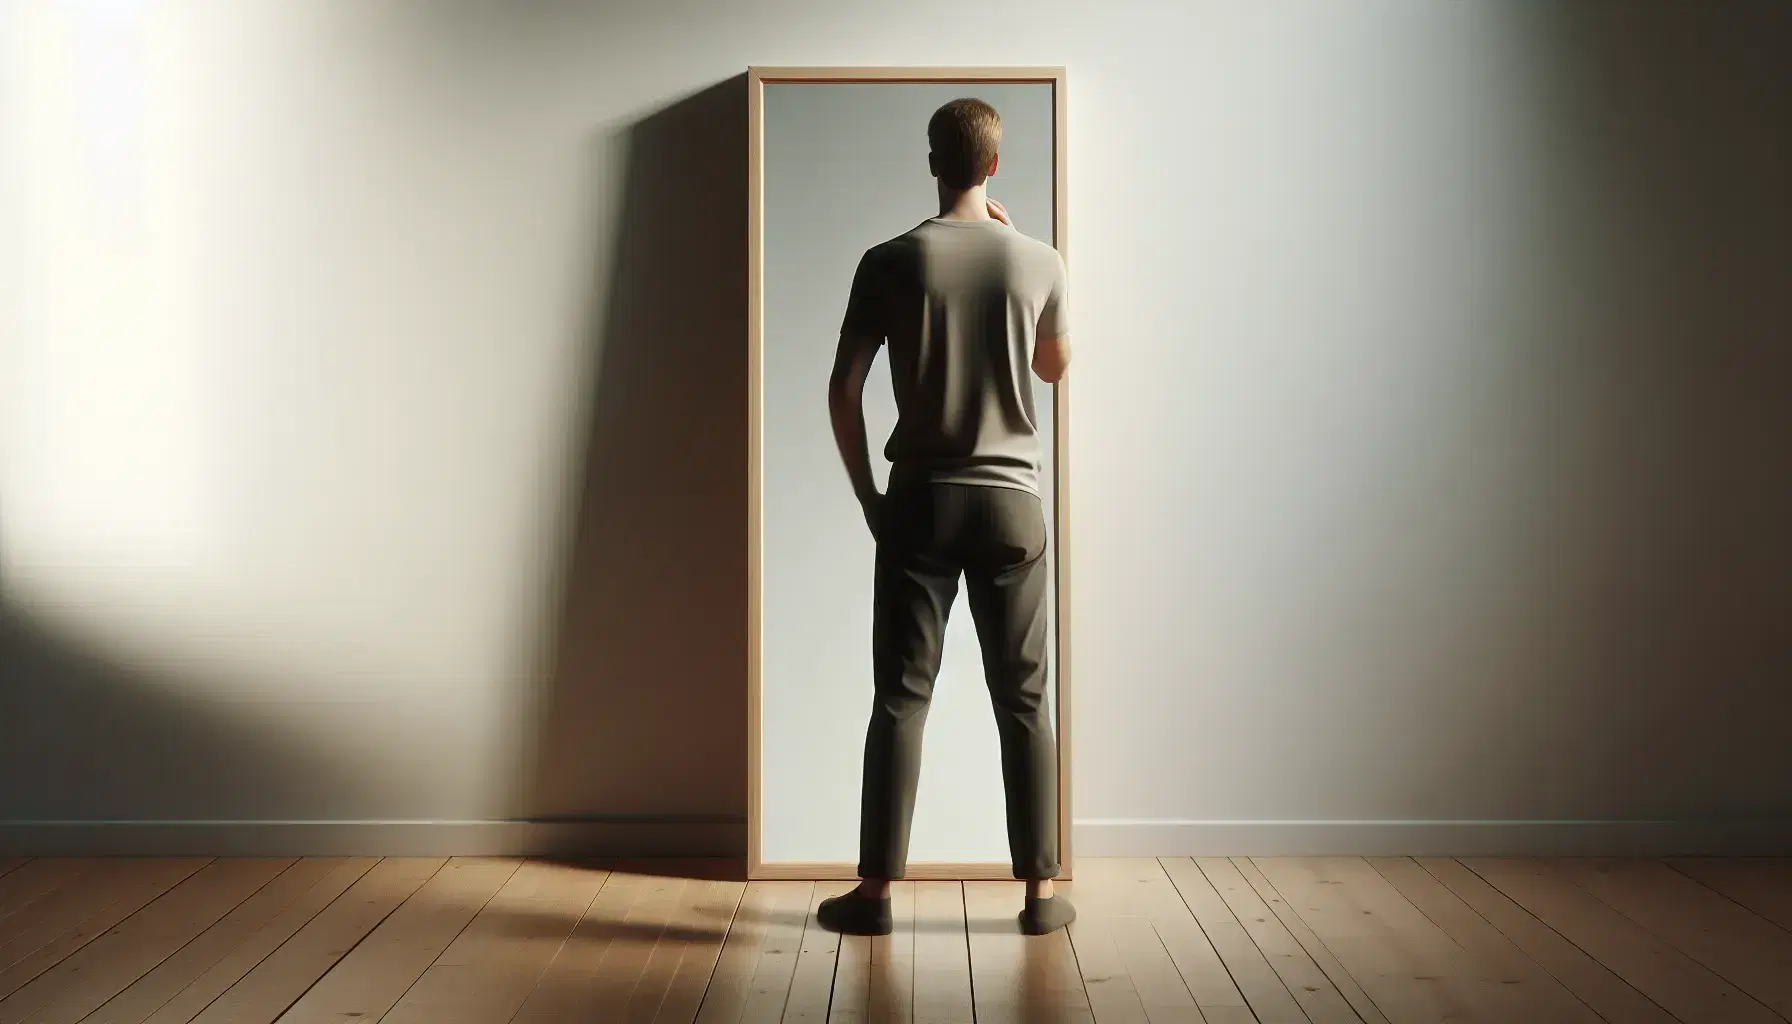 Persona de espaldas frente a espejo de marco de madera clara en pared blanca, con camisa lisa y pantalones oscuros, en habitación iluminada suavemente.